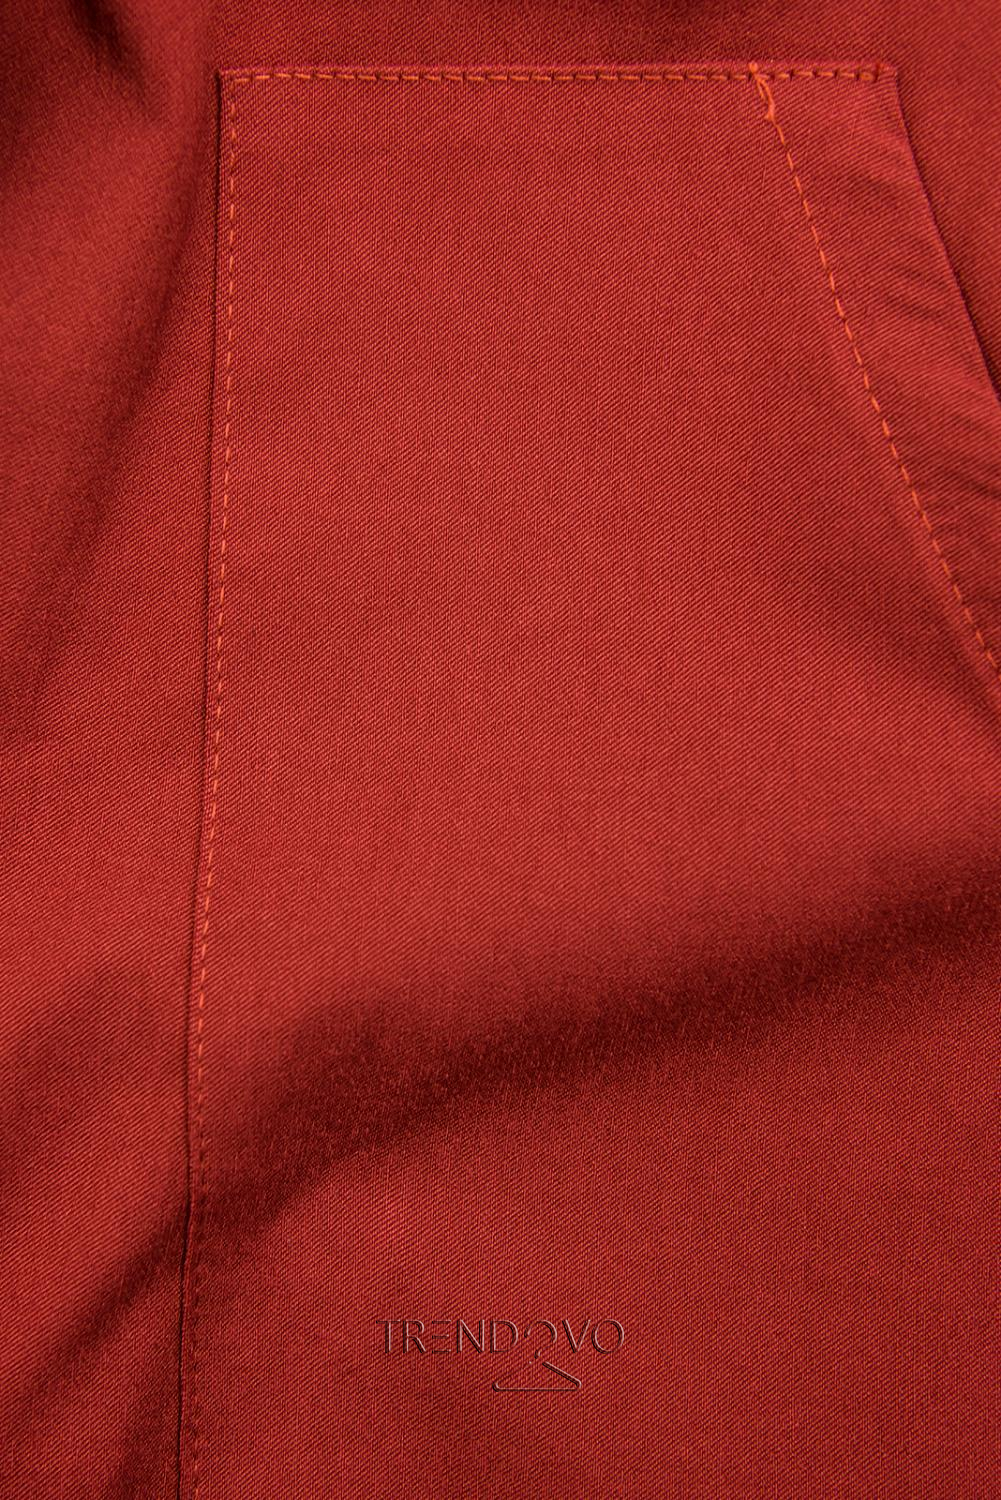 Cihlově červené pouzdrové basic šaty